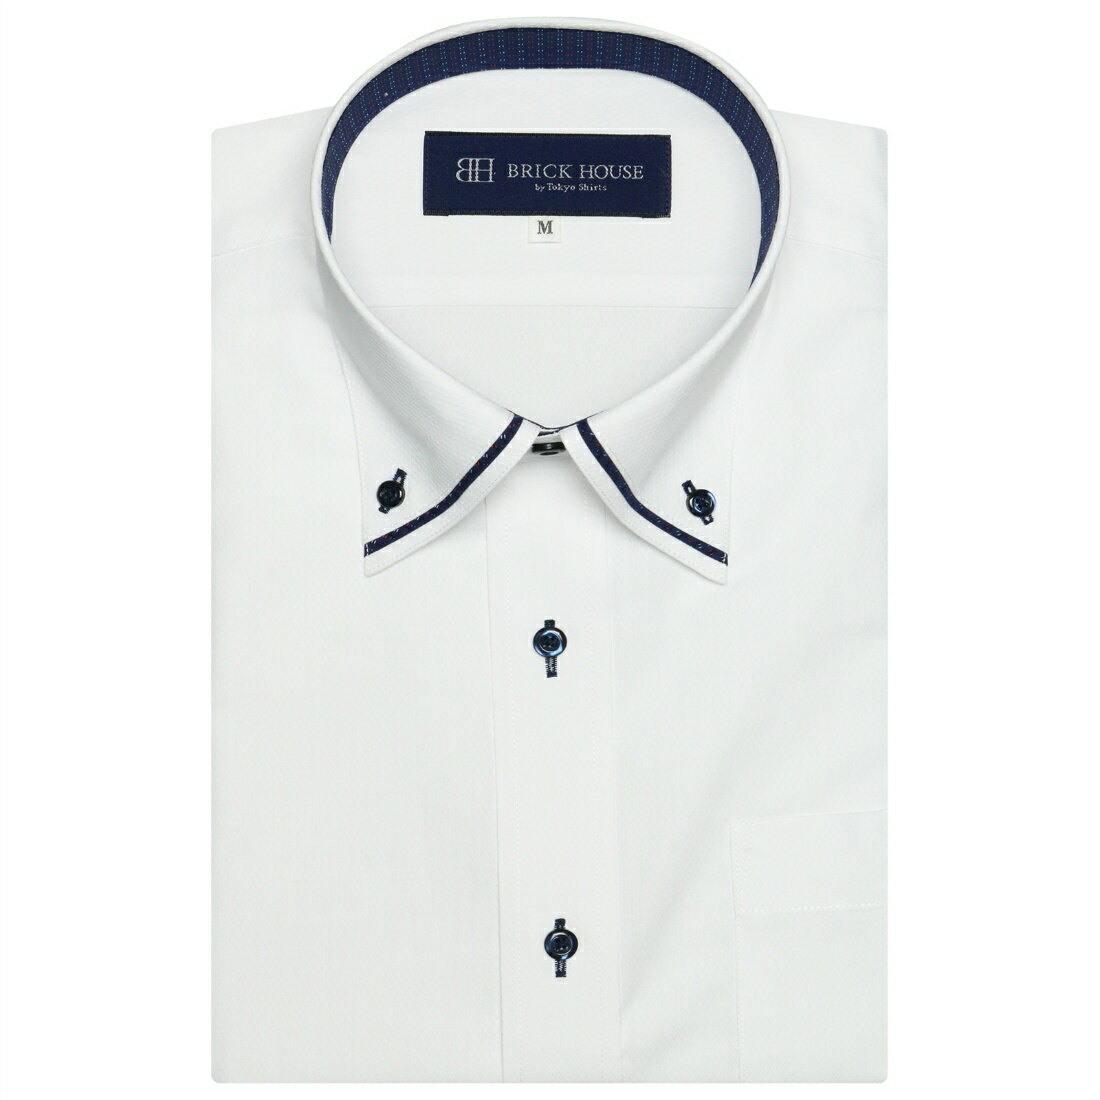 [型番:BM01H306AB46B1S]◆SHEER LESS・透け防止シャツ◆幅広いコーディネイトに活躍する、優秀アイテムの白織ワイシャツ。一方で、着用時の「透け感」が、気になることは、ありませんか？透けにくさを追求した透け防止仕様（UVカット）のワイシャツで清潔感のある着こなしが叶います。台衿内側と同生地の衿羽根マイターが顔周りに華やかさをプラス。ボトムには淡色を合わせて、マイター部分や紺ボタンが映えるコーデが◎。【衿型】ボタンダウンカラー【仕様】胸ポケット（左胸）付き（ホームベース型）背タック・背ダーツなし台衿内側：別布仕様衿羽根：マイター仕様【BRICK HOUSE by Tokyo Shirts / ブリックハウス バイ トウキョウシャツ】業界トップ水準を誇るノーアイロンの形態安定加工は自宅で洗濯可能でお手入れ簡単！高度な縫製技術を用いた高付加価値シャツでありながら選ぶことを気軽に楽しめます。ベーシックから多様なデザインまで幅広いバリエーションで豊富なサイズ展開で、ディテールの隅々にまで織り込んで一枚一枚丁寧に仕立てられたシャツです。【商品のお気に入り登録（ハートマークをクリック）】登録すると、一時完売しても再入荷時に通知を受け取ることができます。更に、お気に入りリストより登録した商品の価格情報や在庫状況などの確認もできますので、ぜひご利用ください！【お気に入りショップの登録】新商品入荷やセールなどの情報をいち早く受け取ることができますので、是非ご登録ください。■カラー：ホワイト【S】 衿回り / 37.5 肩幅 / 44 胸回り / 98 胴回り 86 着丈 / 80 裄丈 / 44.5【M】衿回り / 39.5 肩幅 / 46 胸回り / 106 胴回り 94 着丈 / 82 裄丈 / 46【L】衿回り / 41.5 肩幅 / 48 胸回り / 112 胴回り 100 着丈 / 84 裄丈 / 47【LL】衿回り / 42.5 肩幅 / 49 胸回り / 118 胴回り 108 着丈 / 84 裄丈 / 49【XL】衿回り / 43.5 肩幅 / 51 胸回り / 124 胴回り 118 着丈 / 84 裄丈 / 50※(　)で表記されている数字はヌードサイズです。ヌードサイズとは衣服を身につけない身体のサイズです。お客様ご自身の身体サイズと比較してお選びください。 ■素材： ポリエステル65% 綿35% ■お手入： 家庭洗濯(洗濯機洗い、手洗い)&nbsp;&nbsp;&gt;&gt;商品のお取り扱い方法 ■原産国： ベトナム【透け防止】 形態安定 ボタンダウンカラー 半袖 ワイシャツ／ブリックハウス（BRICKHOUSE）ホワイト画面上と実物では、多少色具合が異なって見える場合がございます。